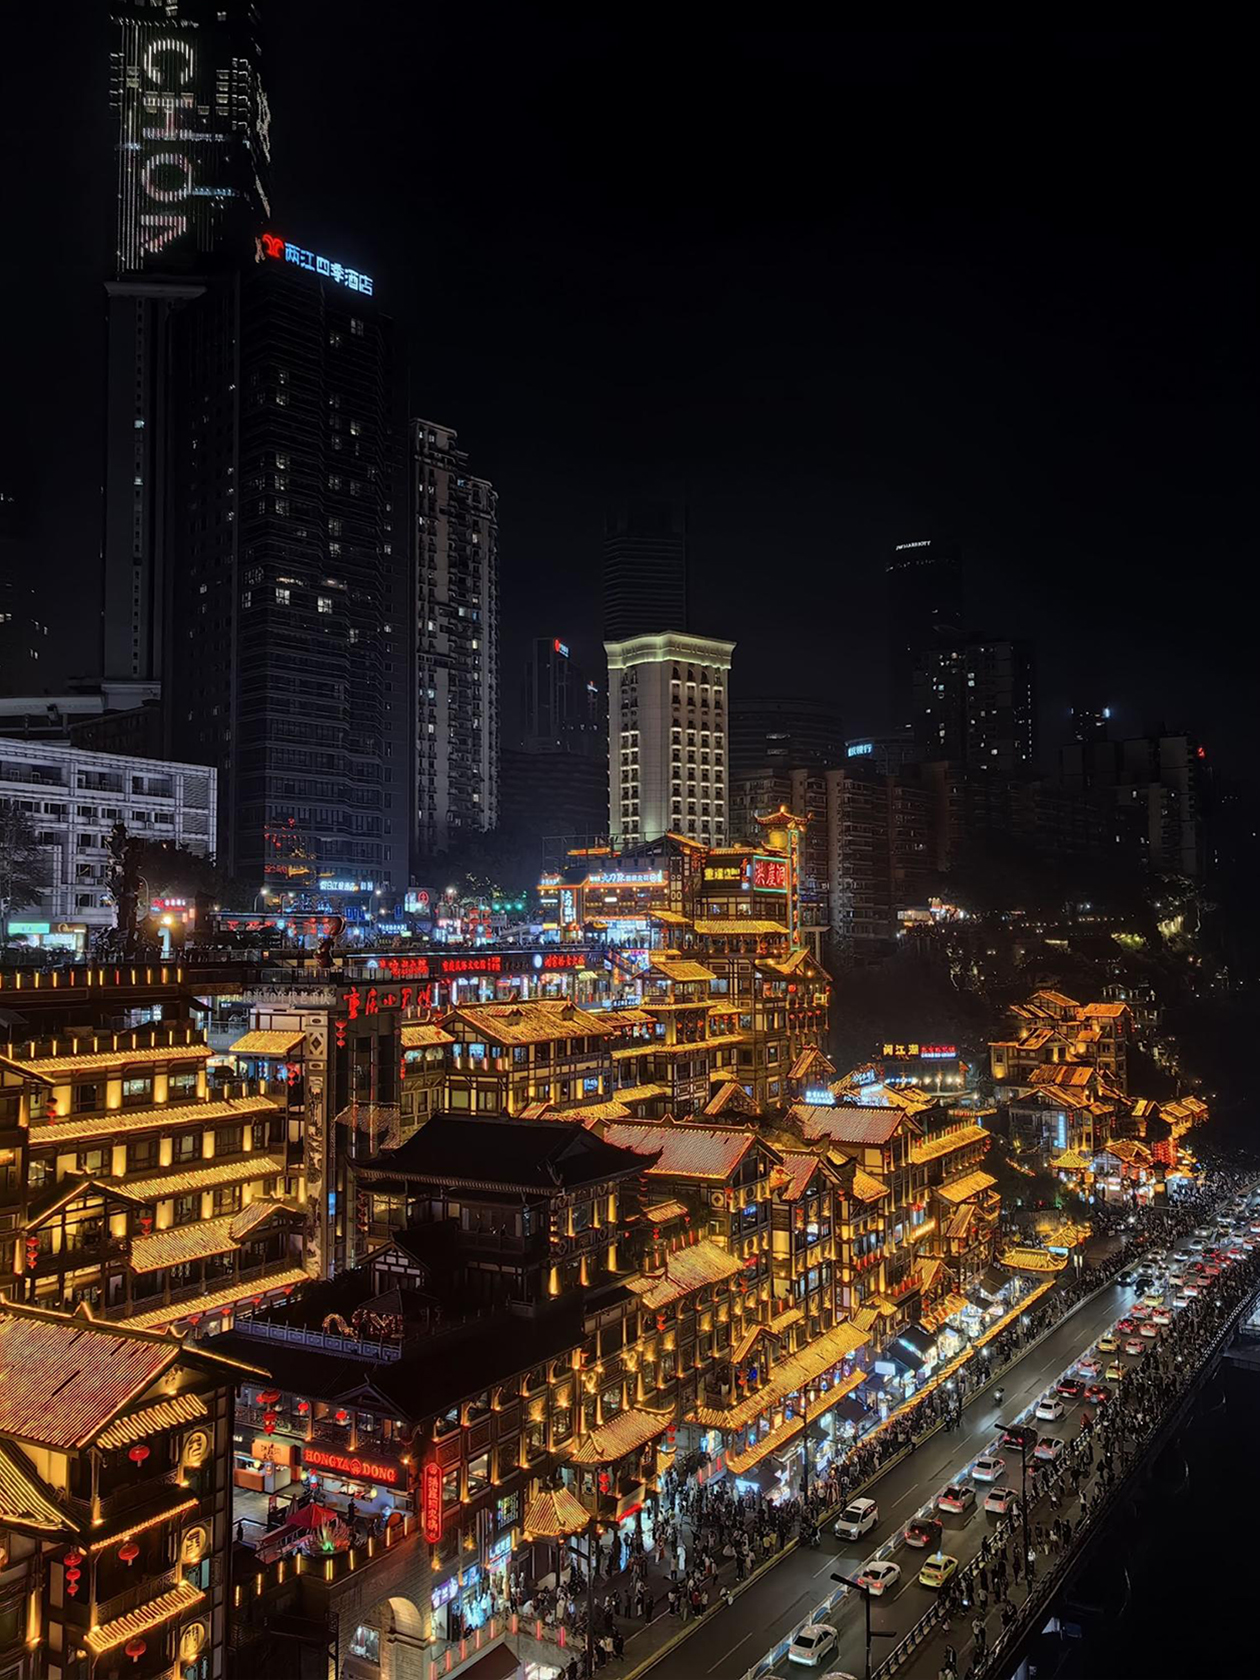 Далее прогулялись по пешеходной улице Цзефанбэй, посмотрели на золотой в свете ночной подсветки Хуньядун, сходили в очень колоритный по виду книжный магазин, визуально оценили горизонтальный небоскреб